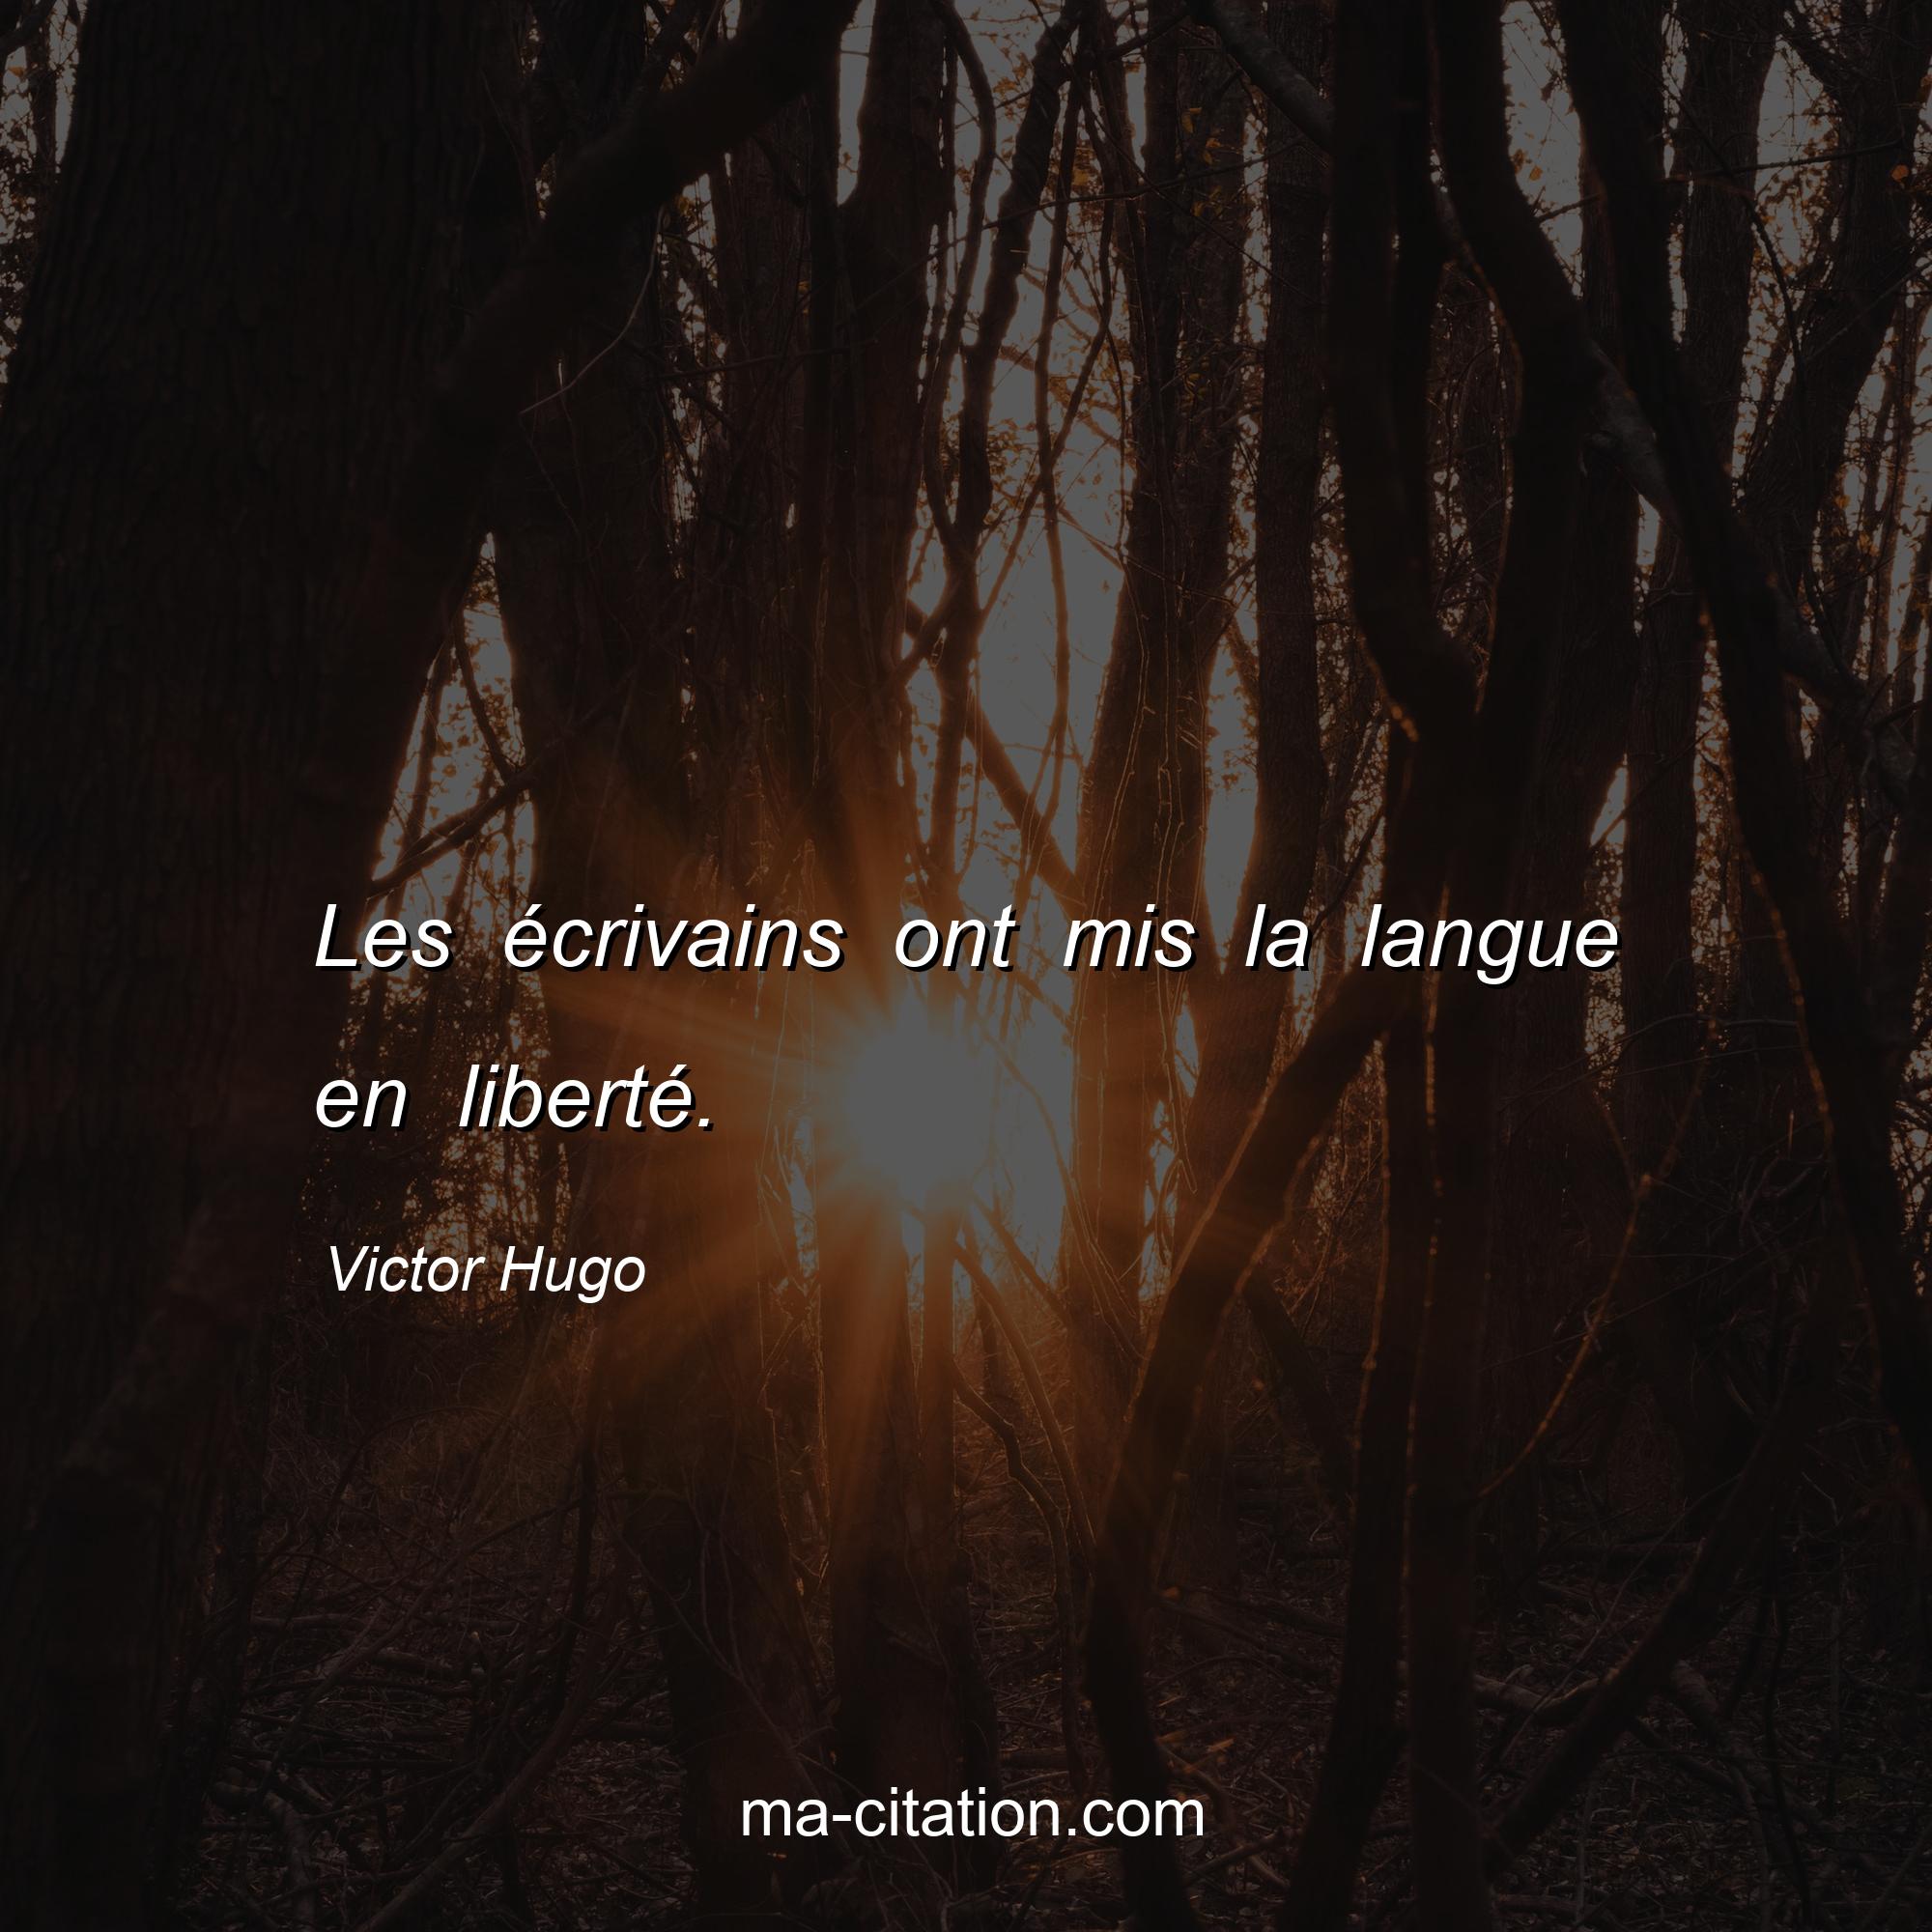 Victor Hugo : Les écrivains ont mis la langue en liberté.